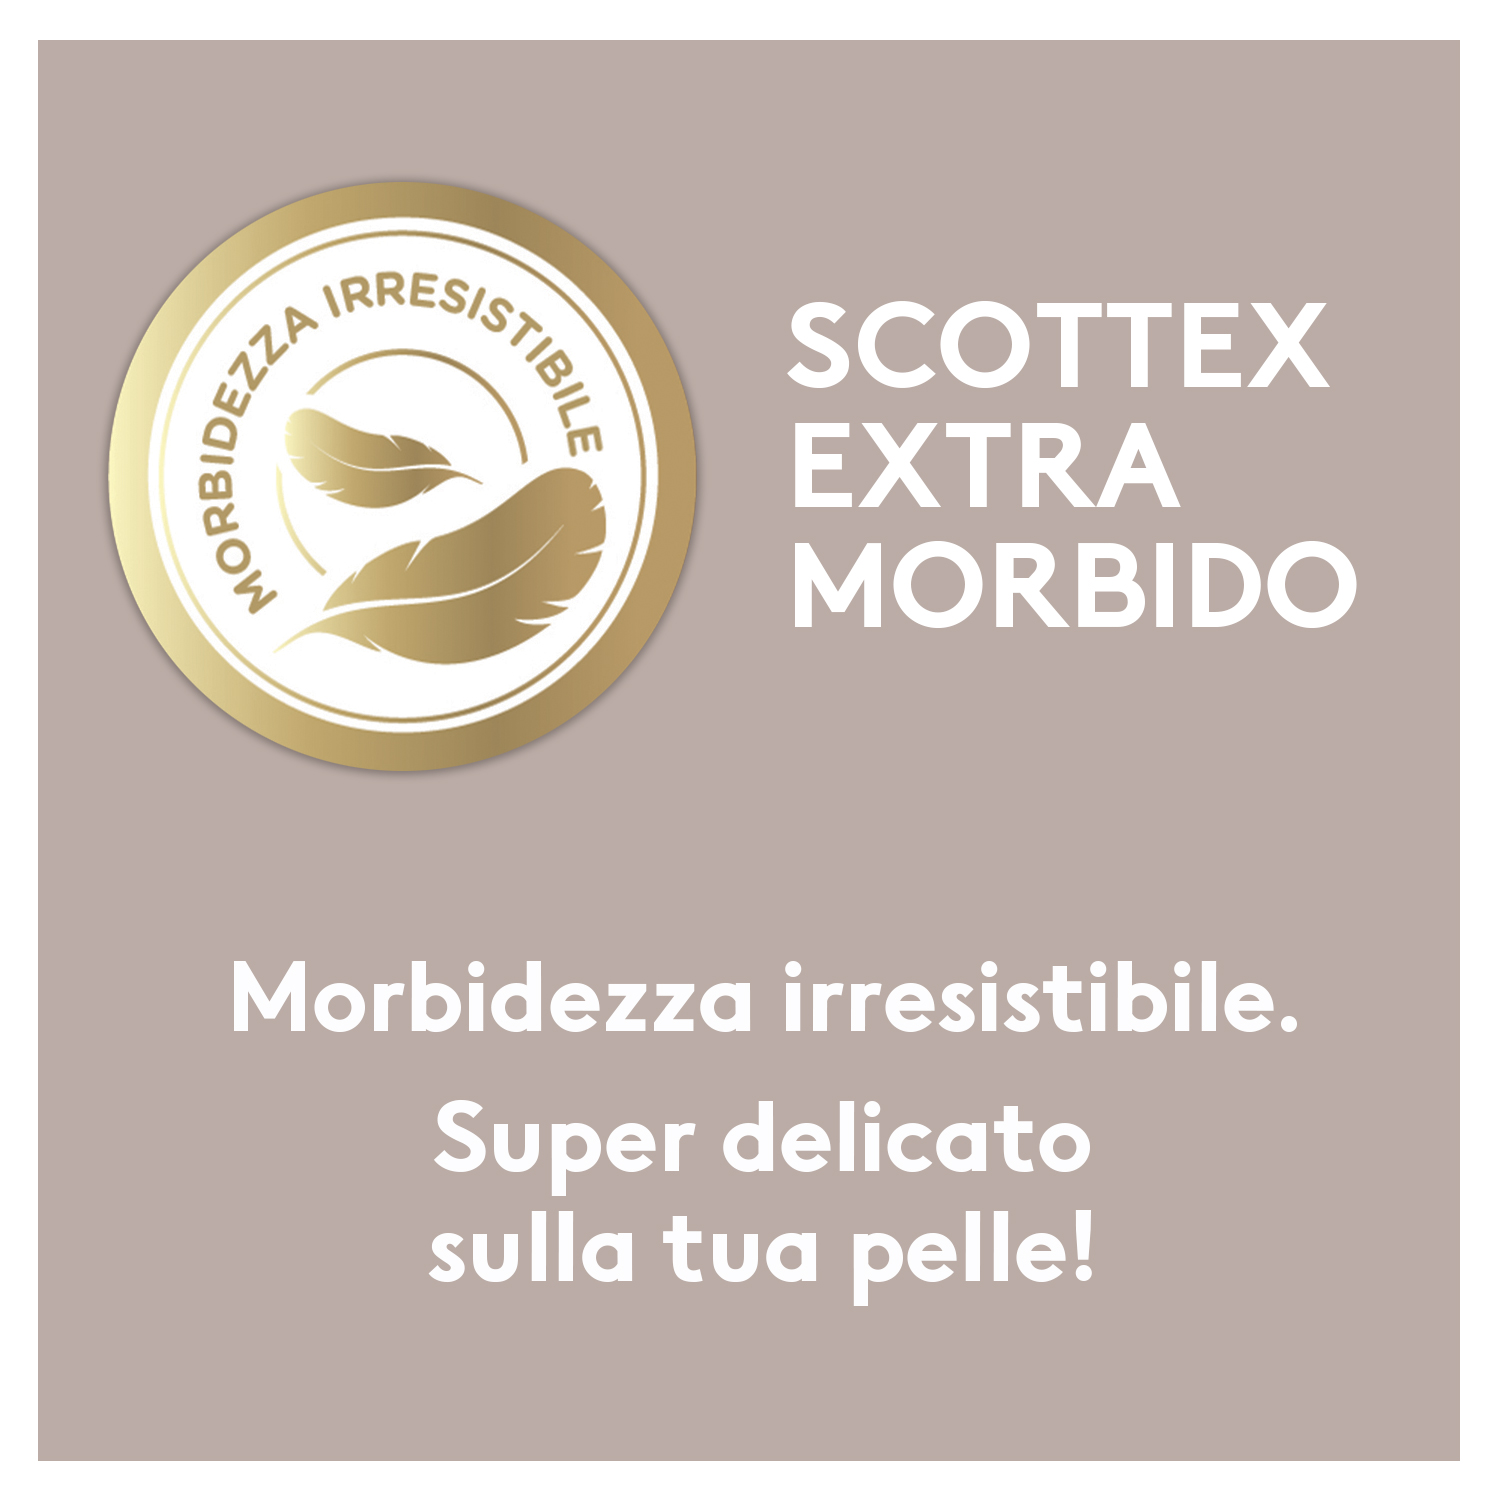 Scottex extra morbido p10 - Scottex